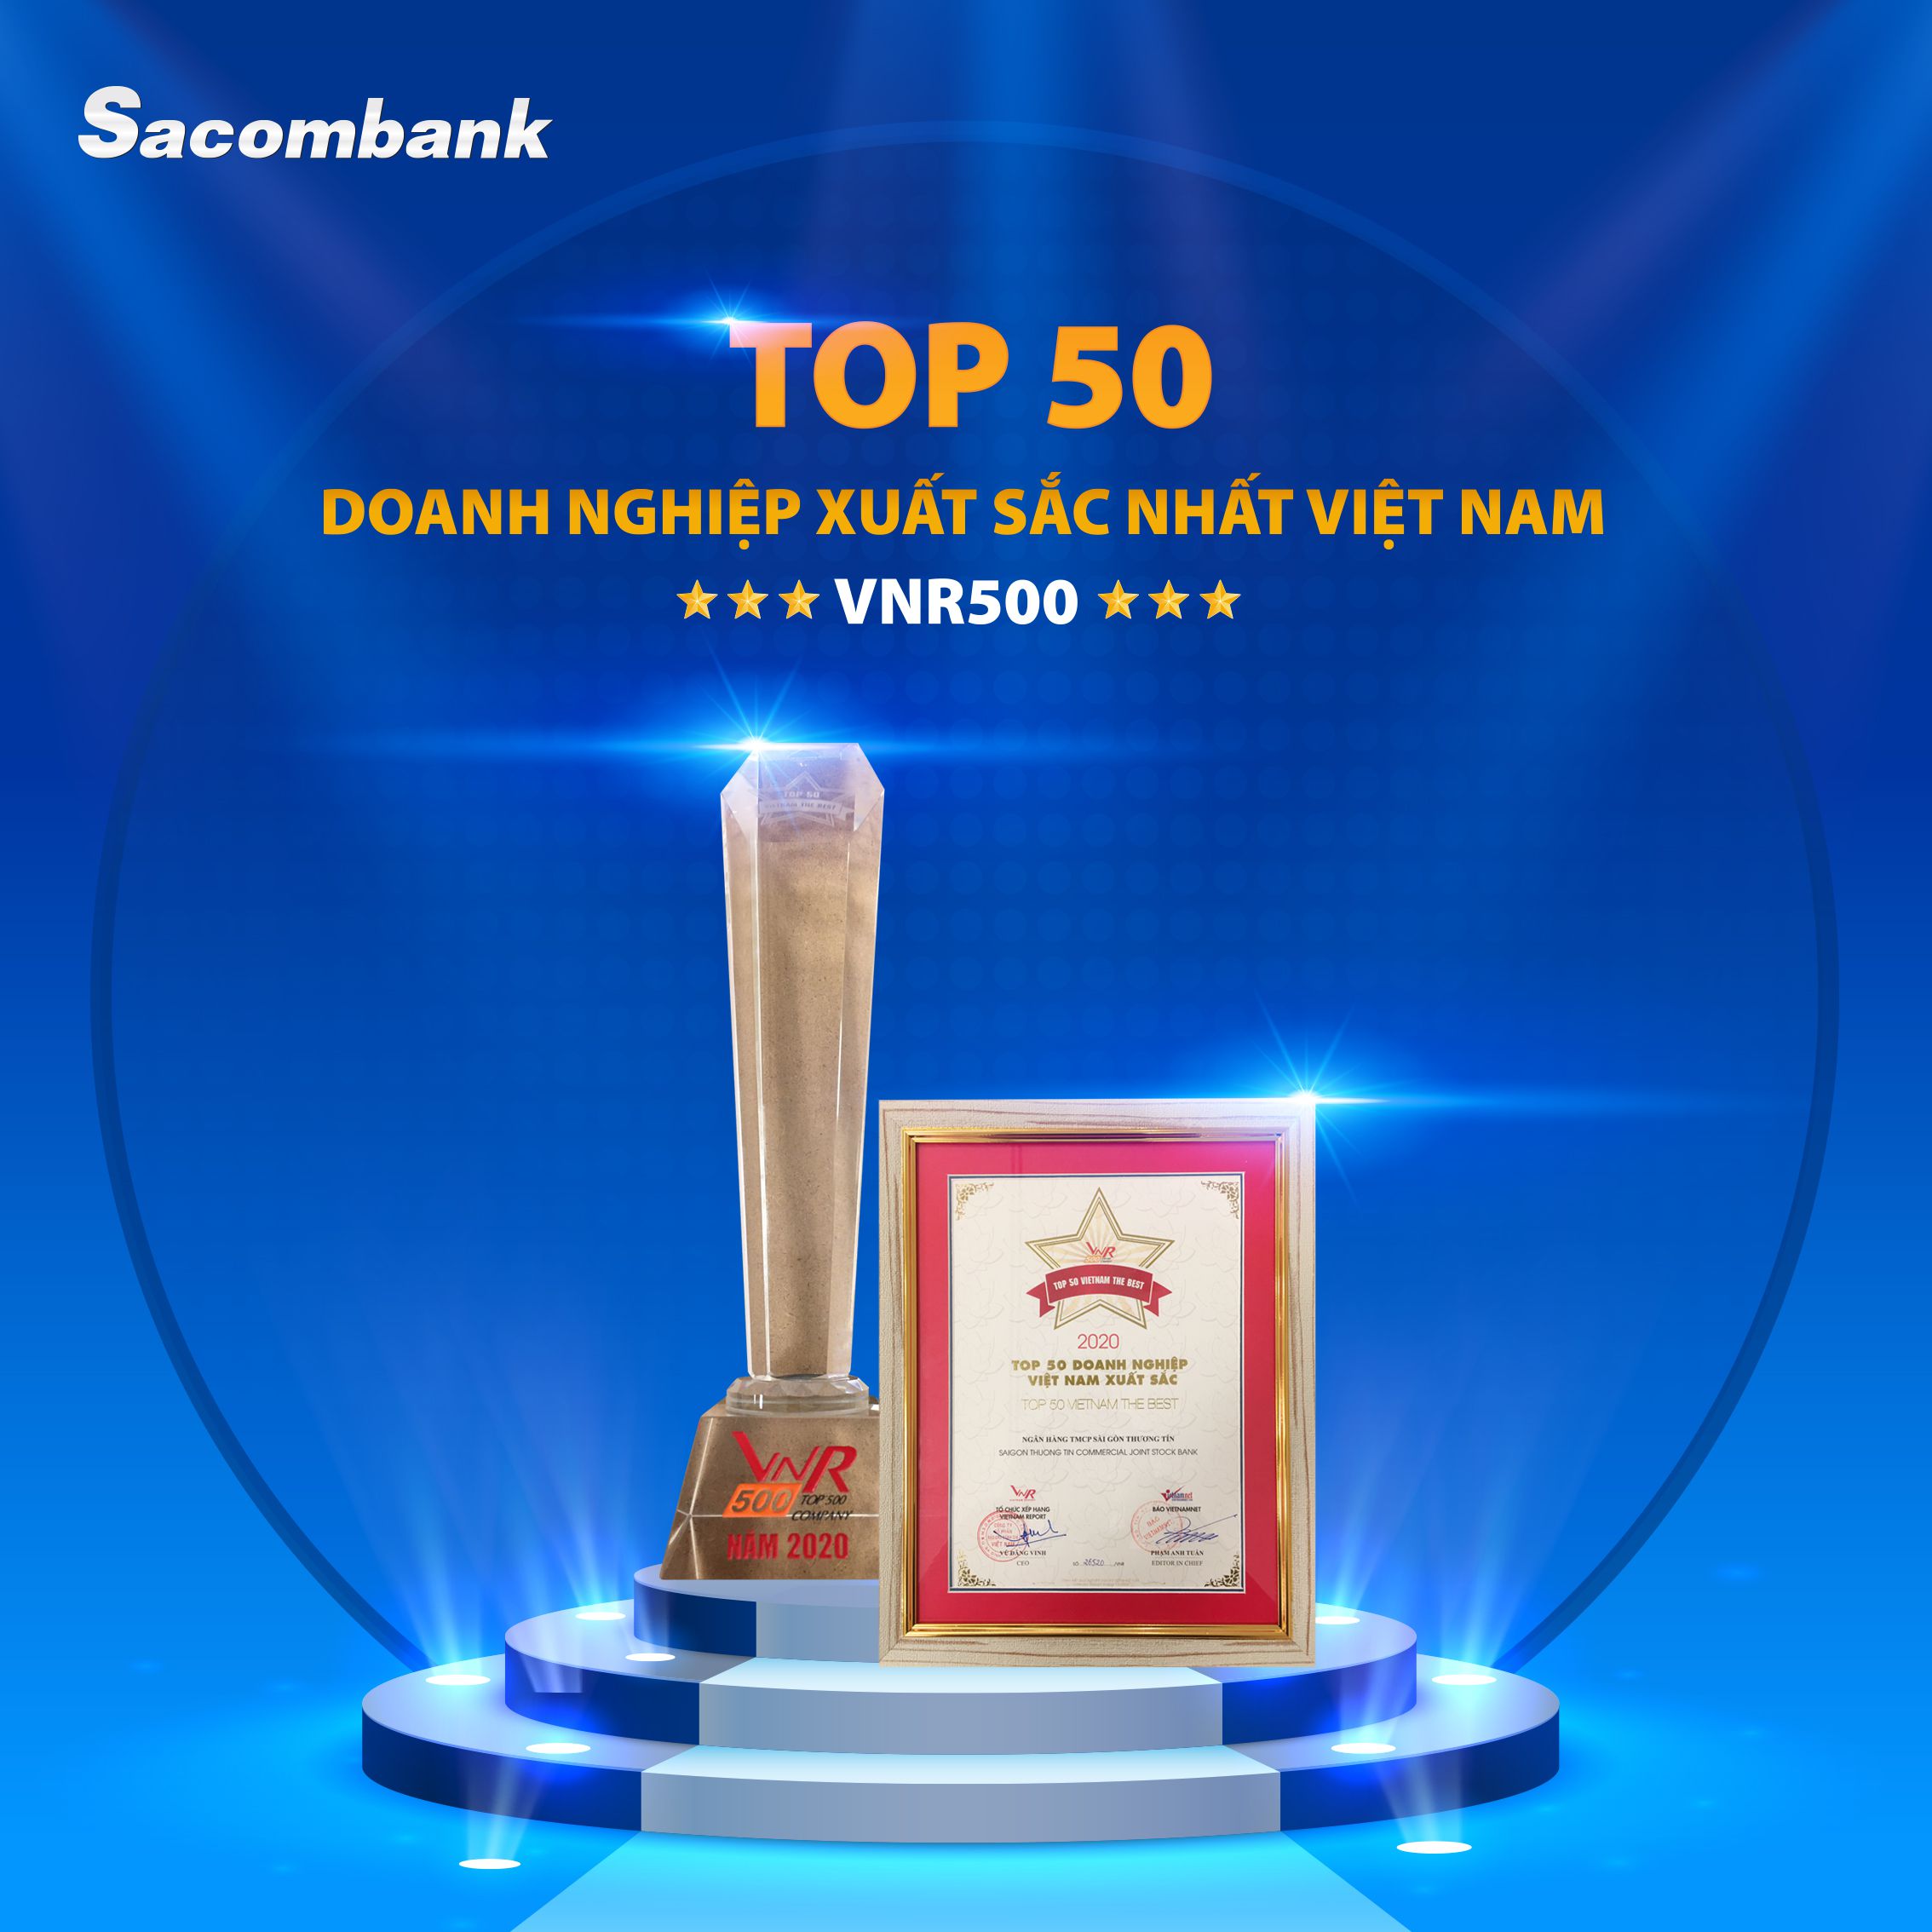 Sacombank nhận giải thưởng Top 50 Doanh nghiệp xuất sắc nhất Việt Nam (VNR500)